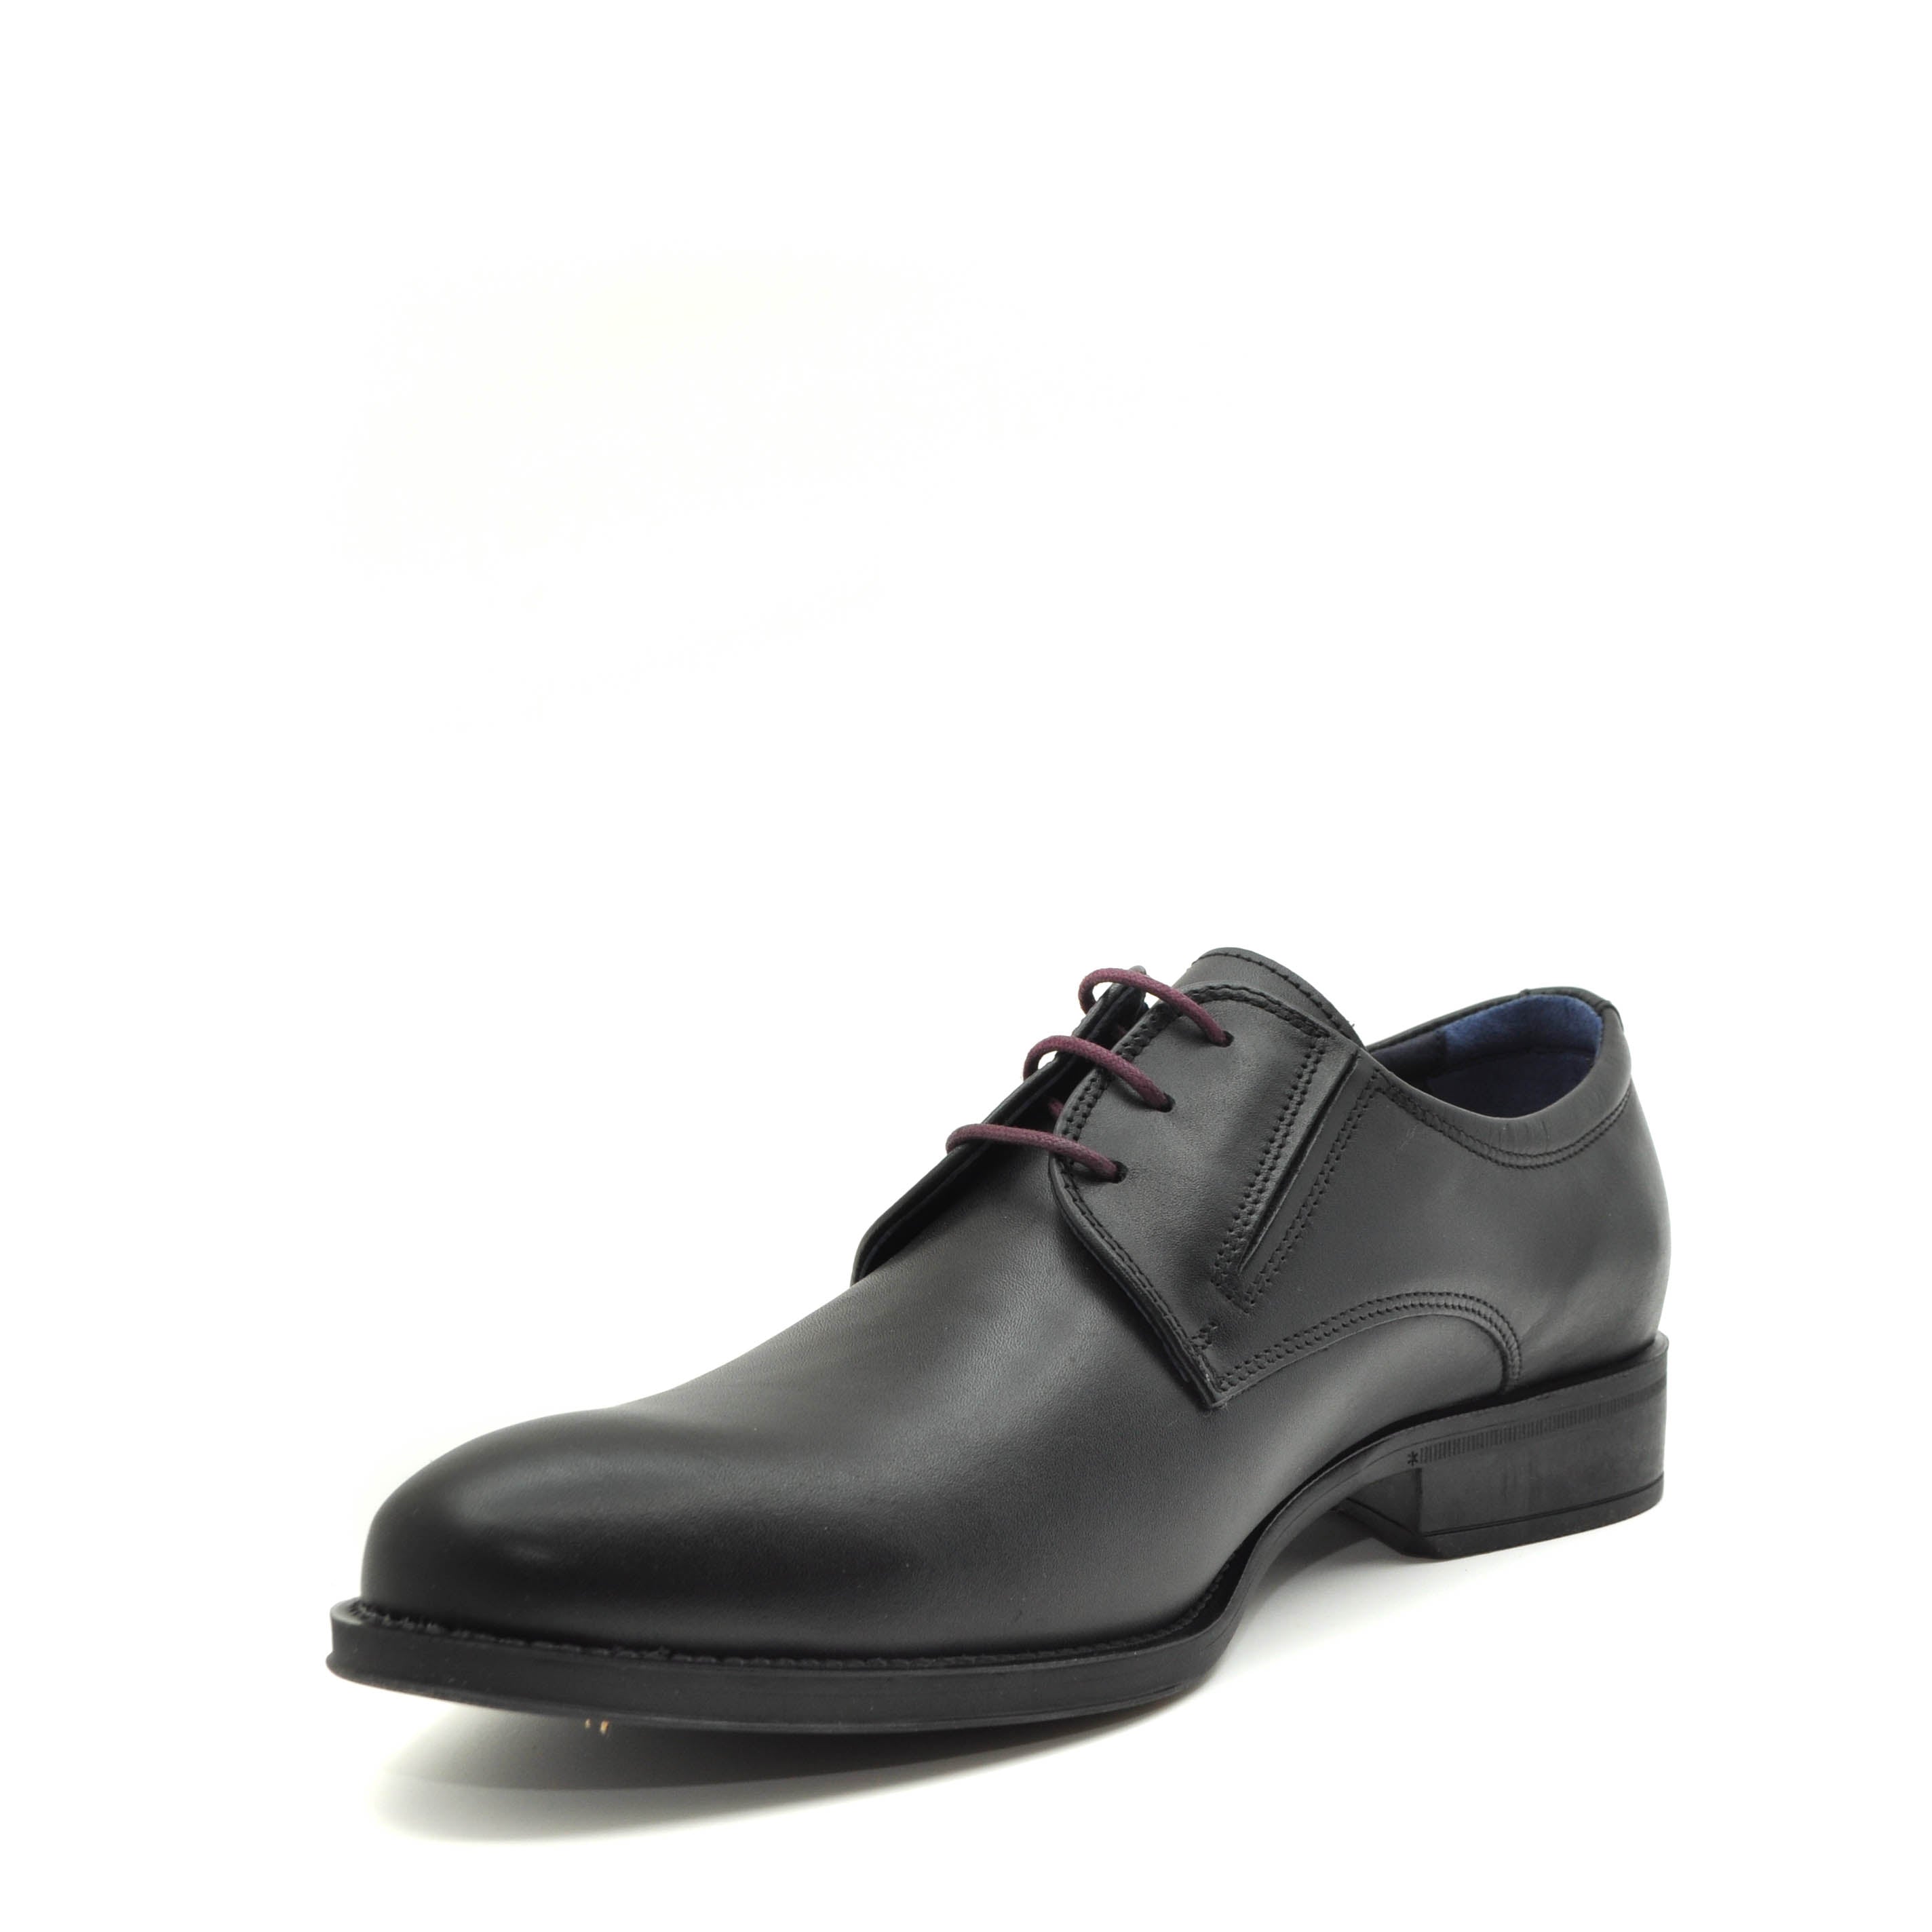 fluchos black wedding shoes for men